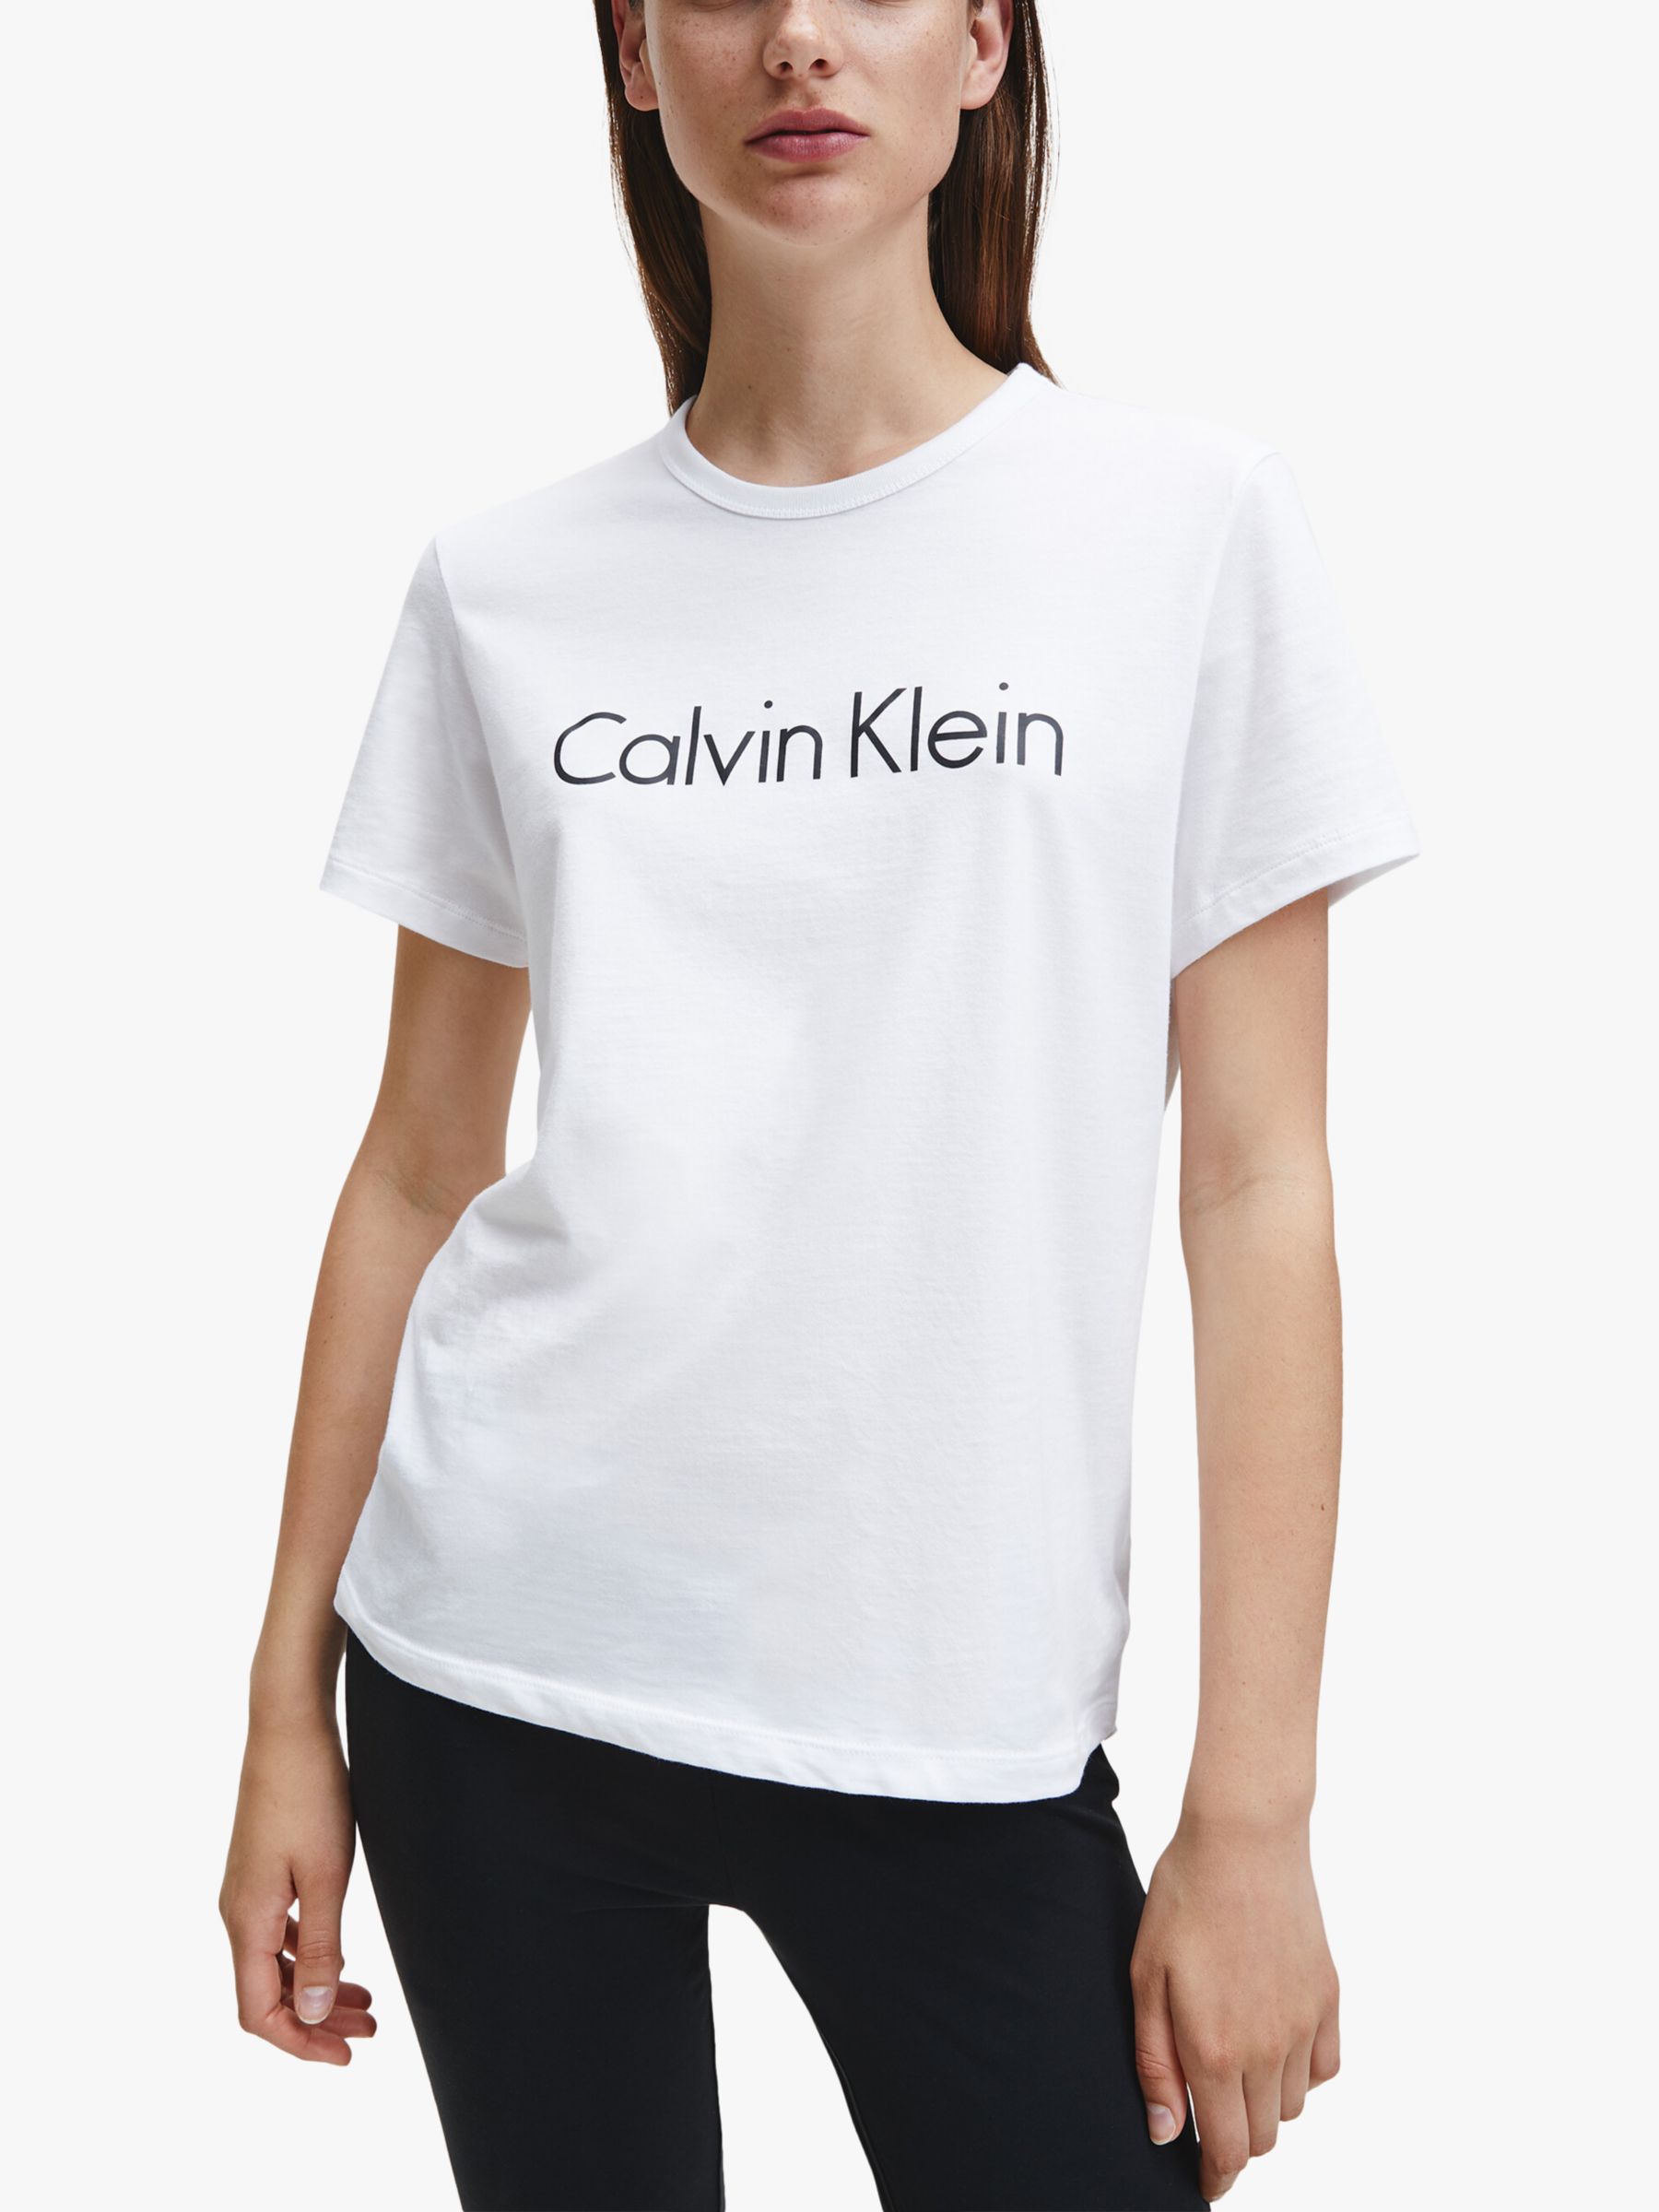 straal Draaien bende Calvin Klein Logo Cotton Pyjama T-Shirt, White at John Lewis & Partners